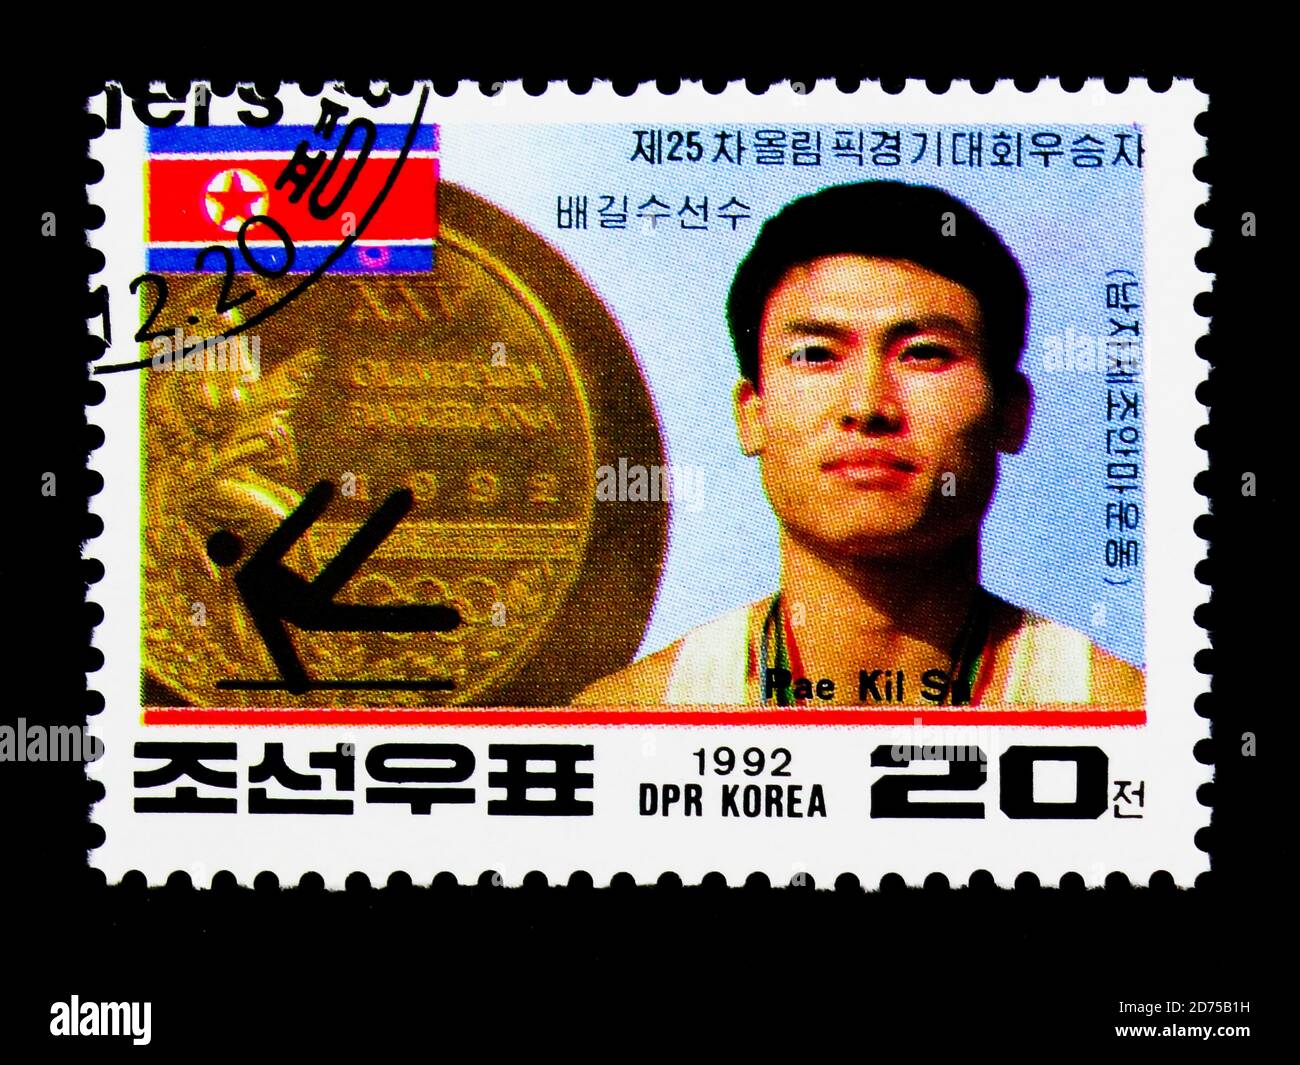 MOSCOU, RUSSIE - 25 NOVEMBRE 2017 : un timbre imprimé en république populaire démocratique de Corée montre la médaille d'or nord-coréenne - Barcelona Olympic Banque D'Images